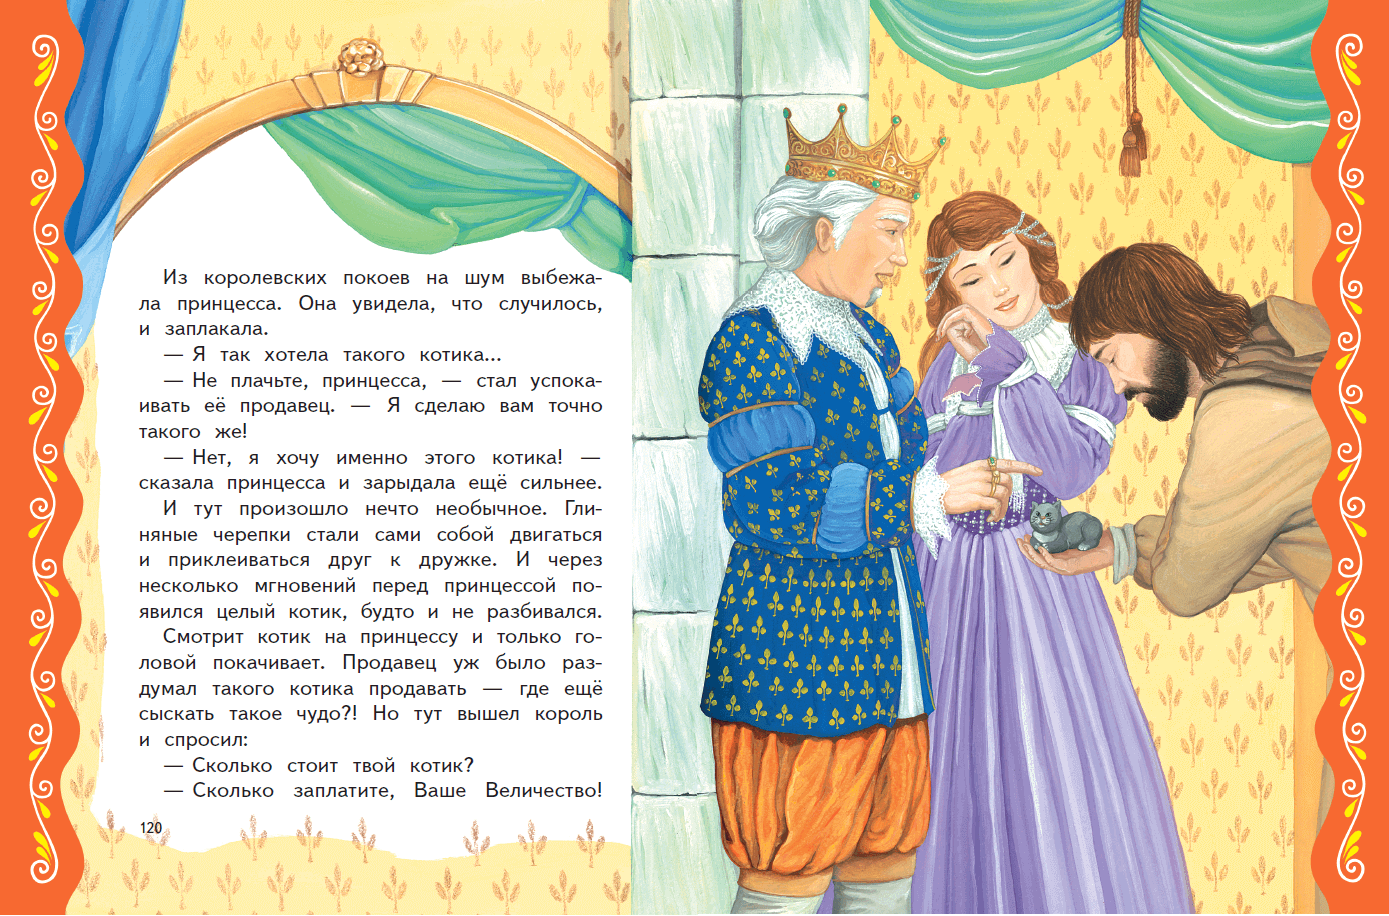 Читать про принца. Сказки о принцах и принцессах. Короткая сказка про принцессу. Принц сказка. Сказка на ночь для детей про принцессу.